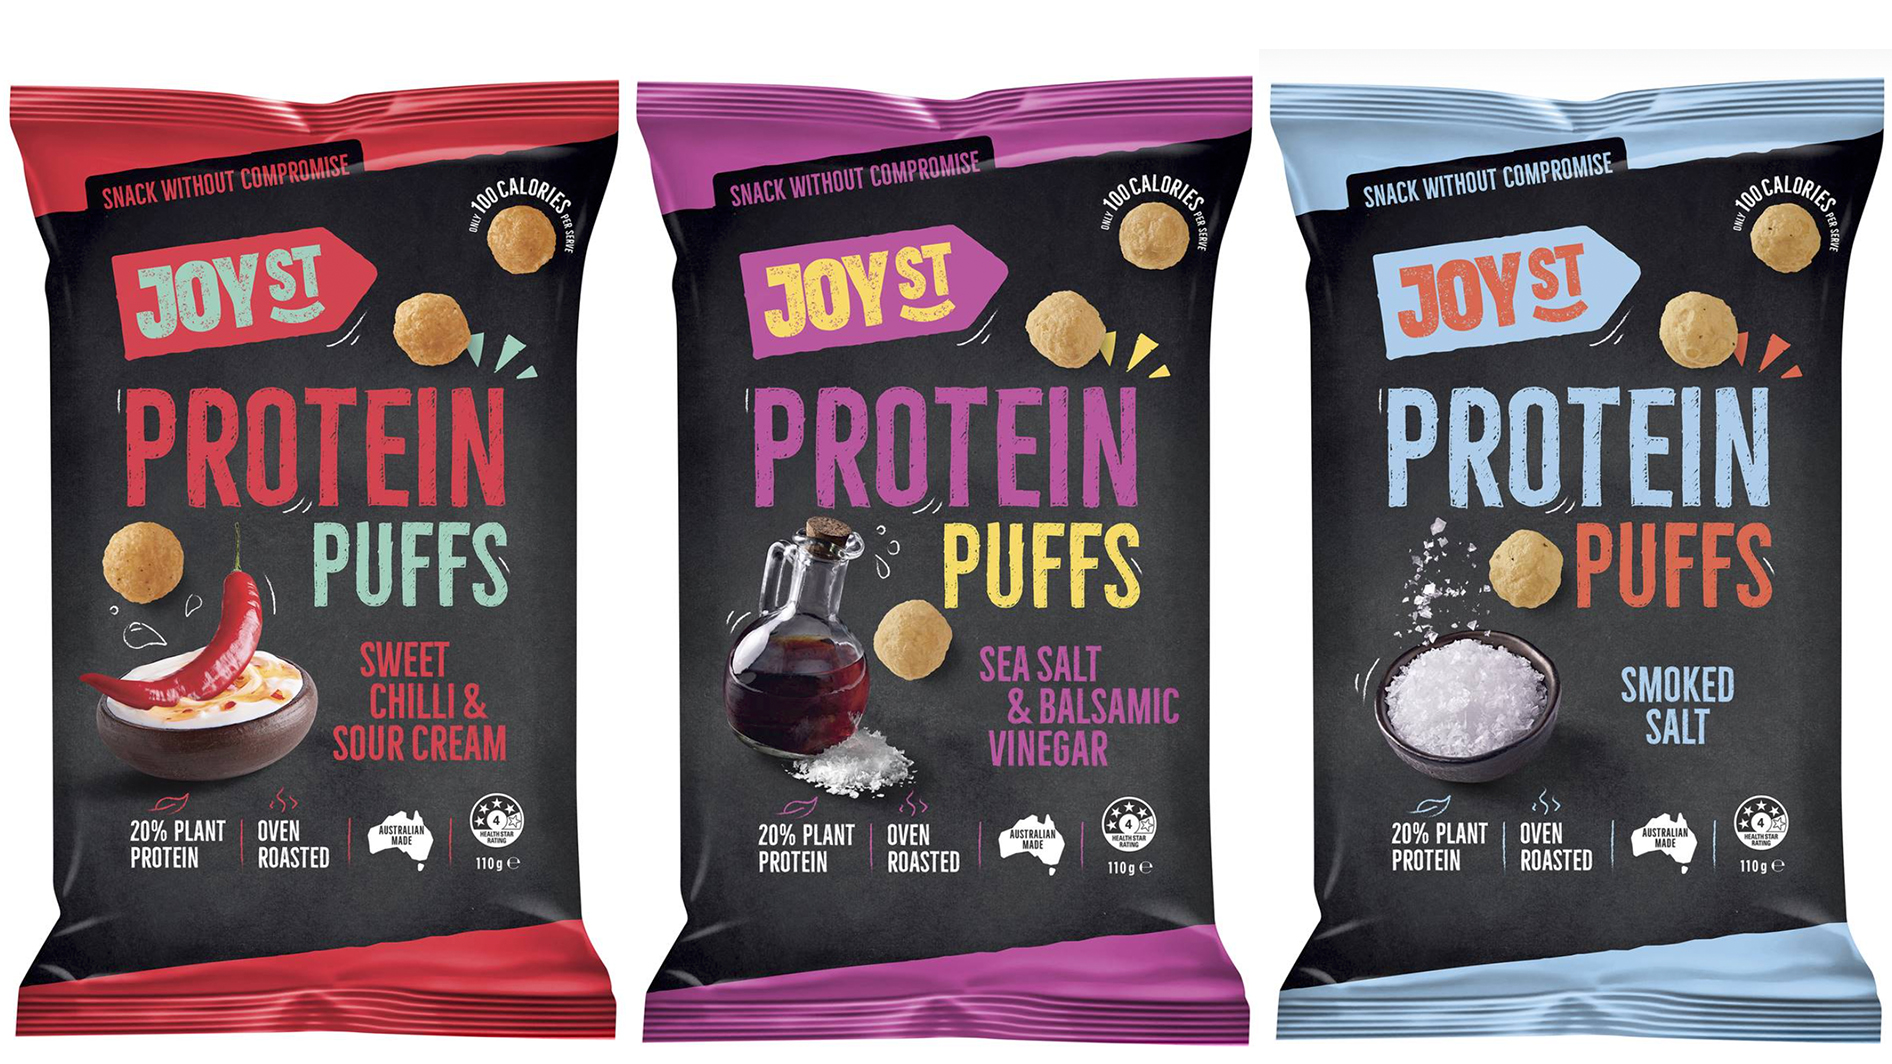 JoySt-Protein-Puffs